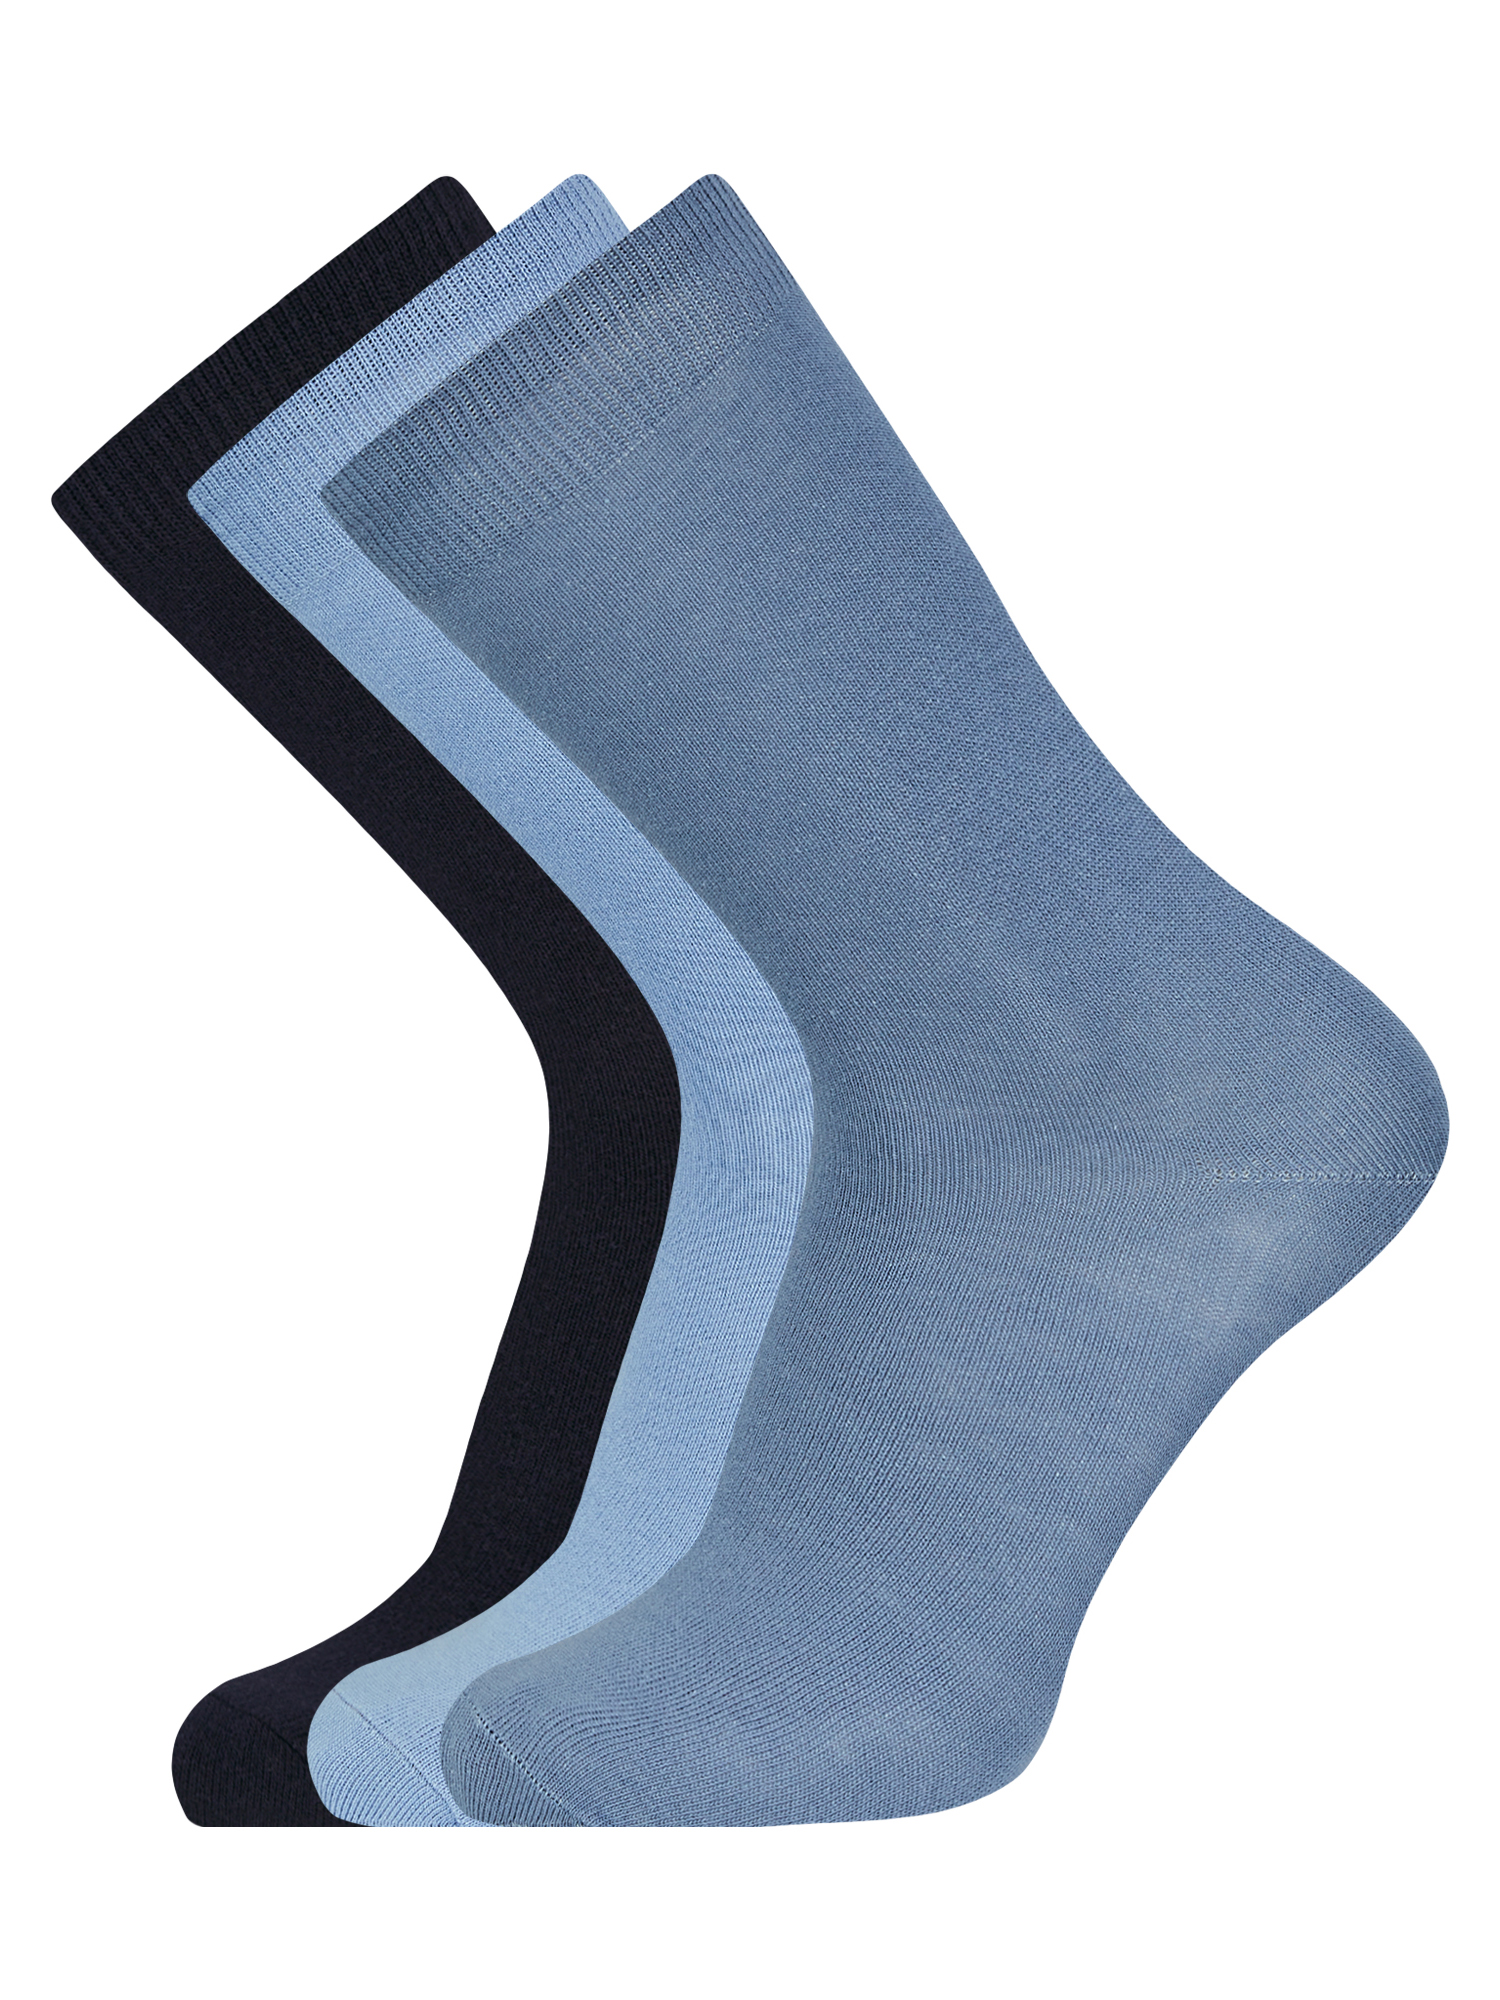 Комплект носков мужских oodji 7B233001T3 разноцветных 40-43